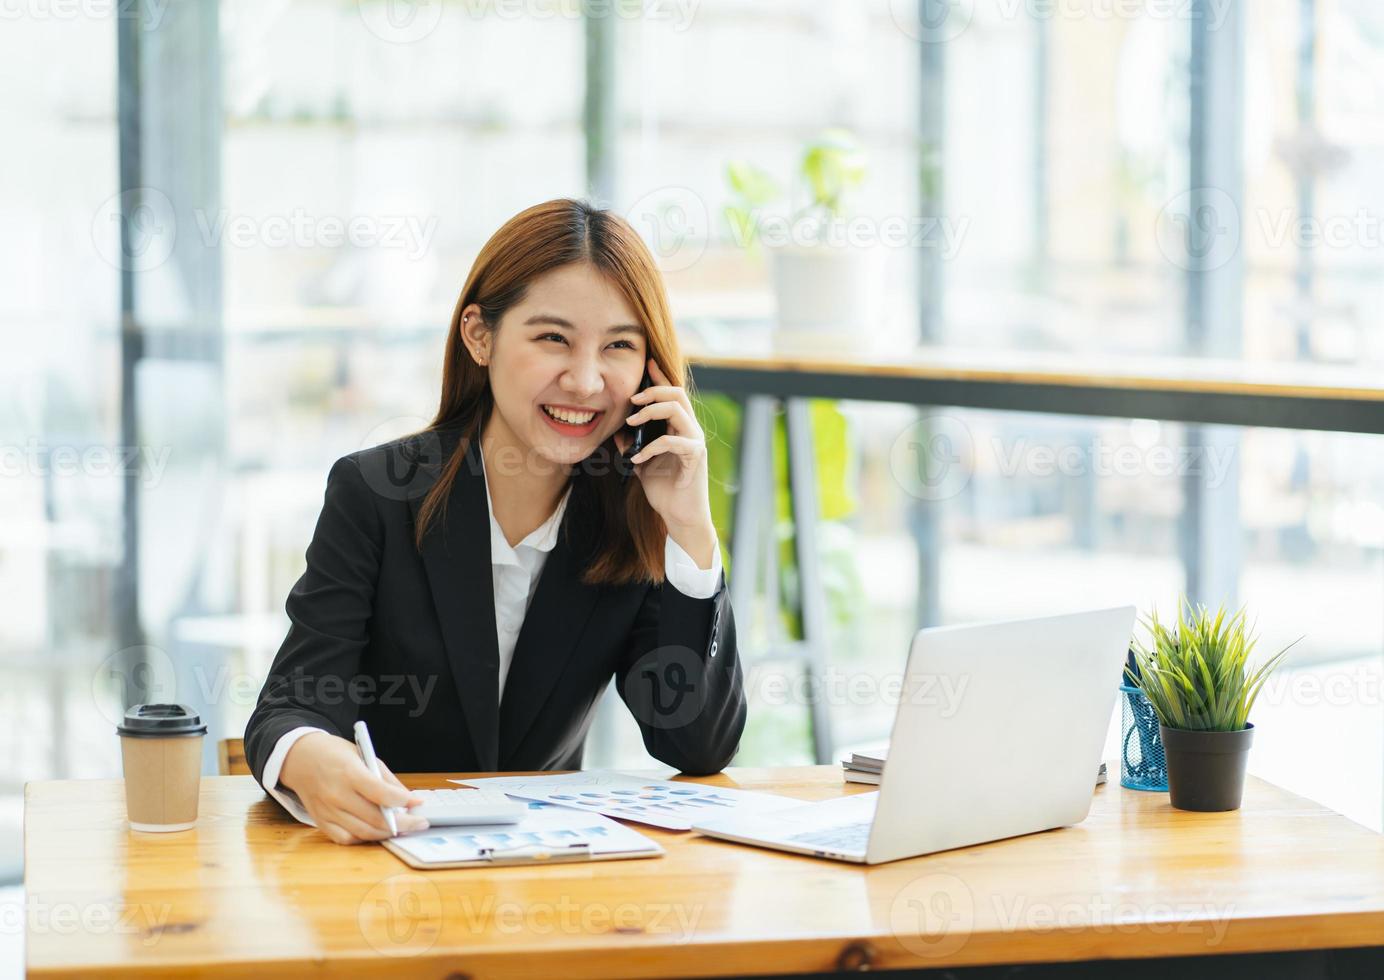 la donna asiatica in abiti casual è felice e allegra mentre comunica con il suo smartphone e lavora in un ufficio moderno. foto